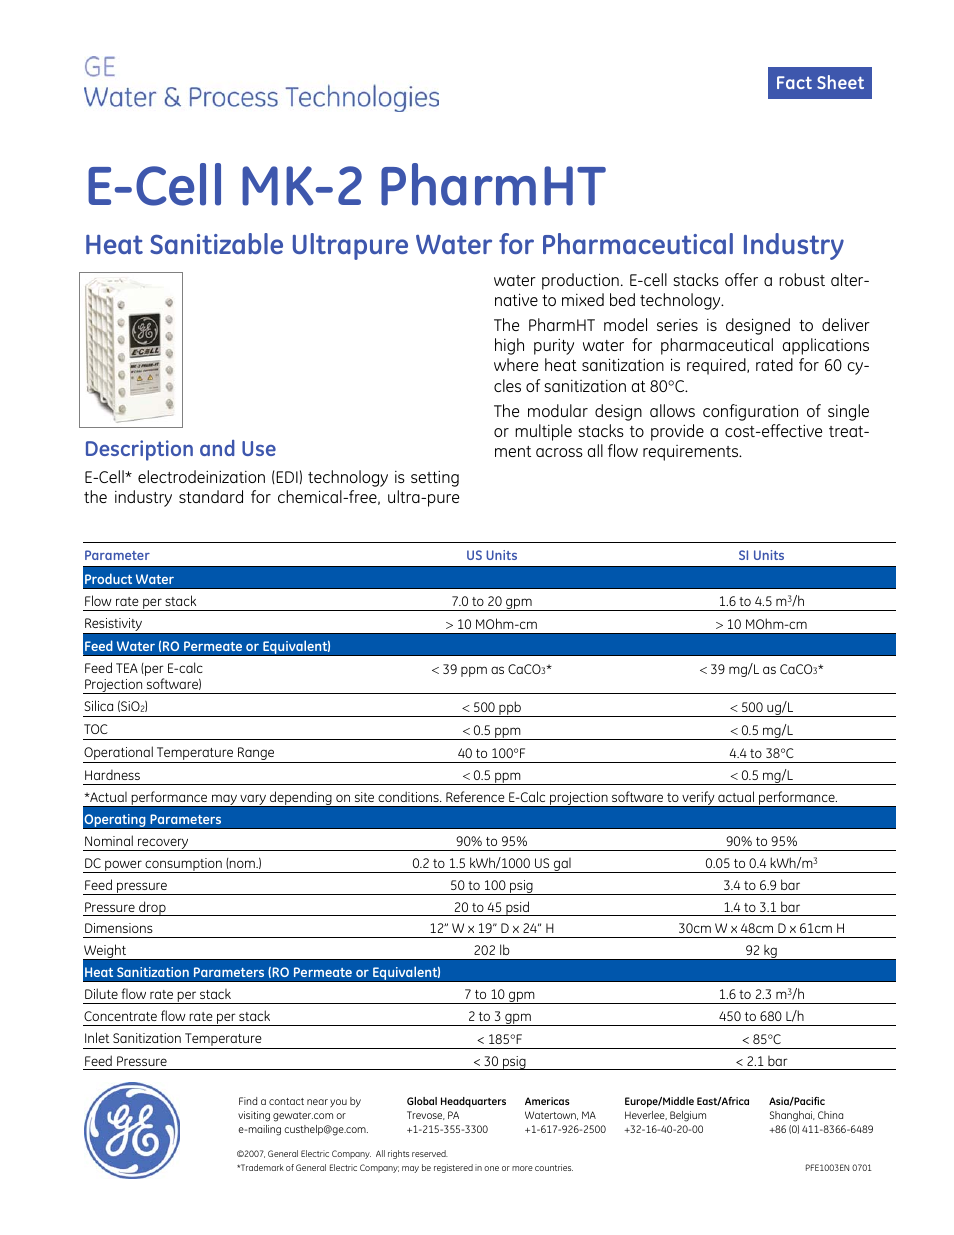 Electrodeionization (EDI) - E-Cell MK-2PharmHT